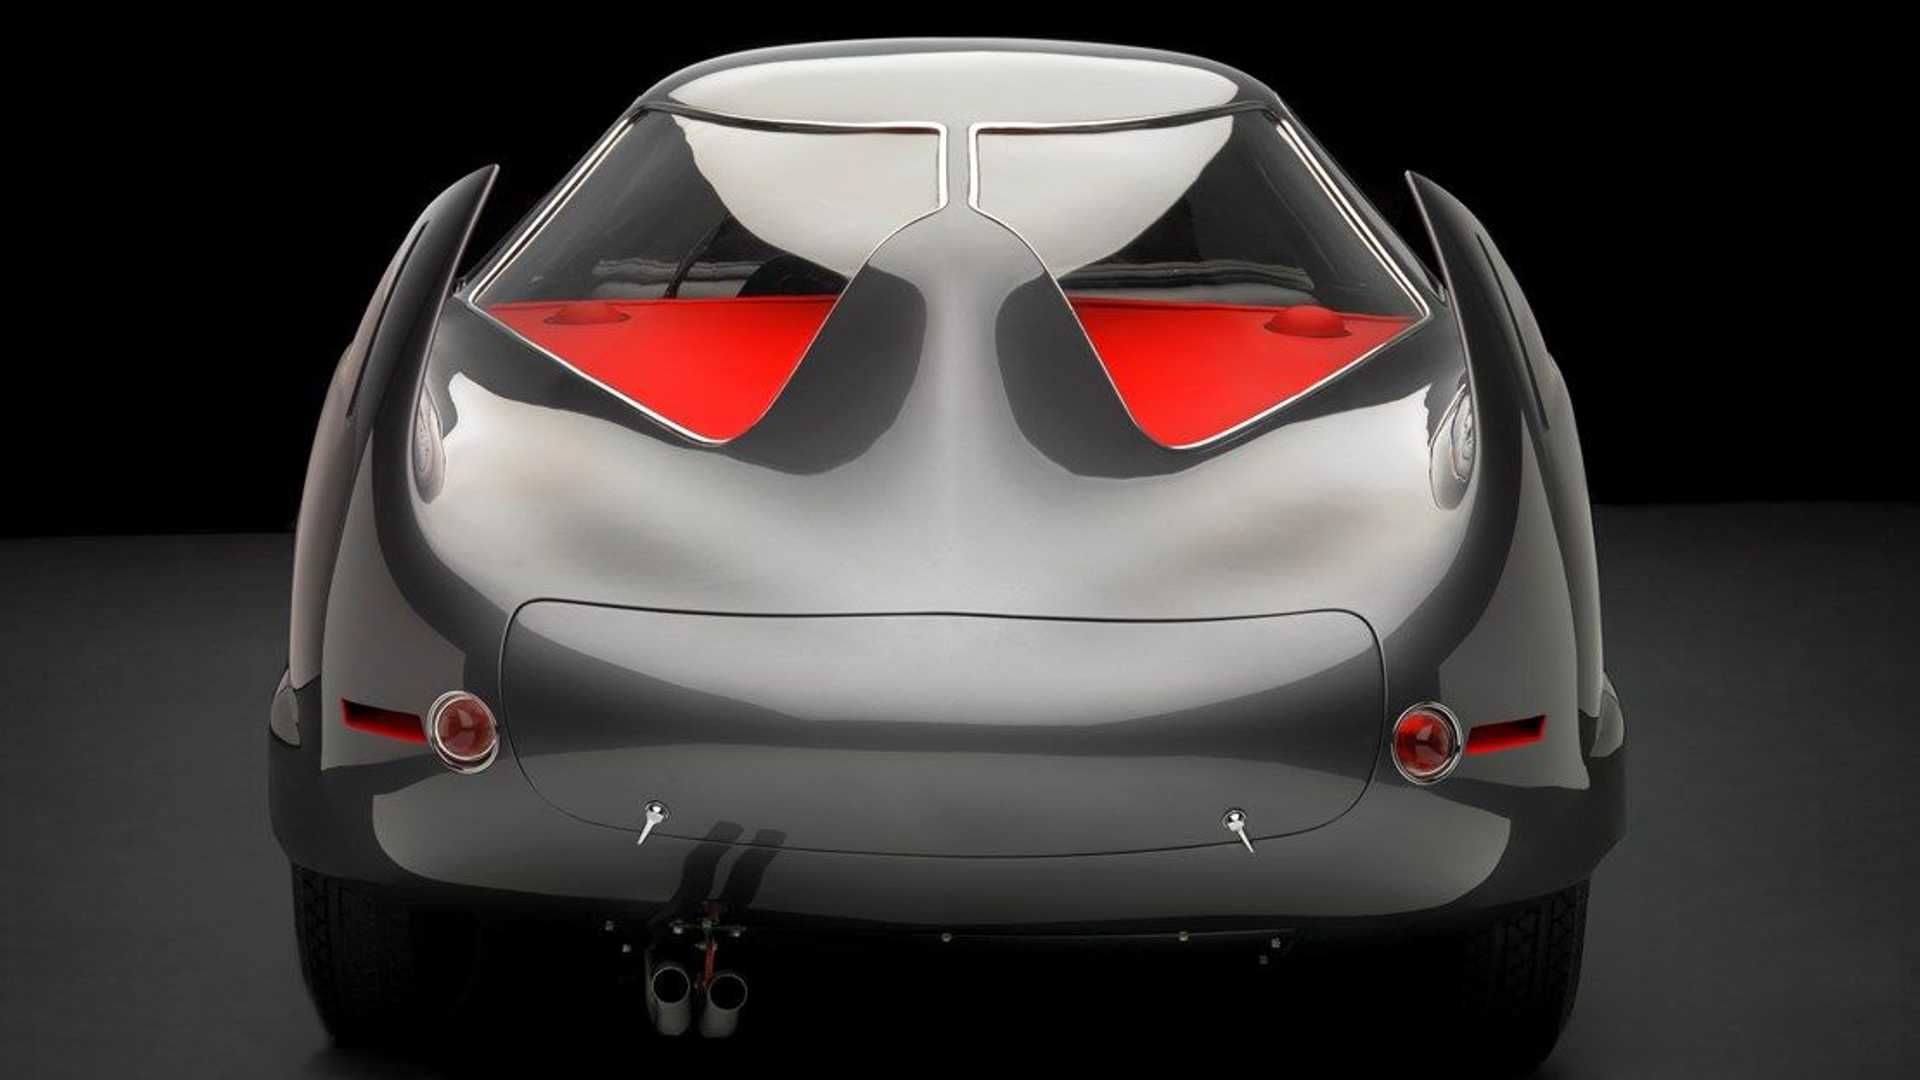 نمای عقب خودروی مفهومی آلفا رومئو / Alfa Romeo B.A.T. Concept Car با رنگ خاکستری